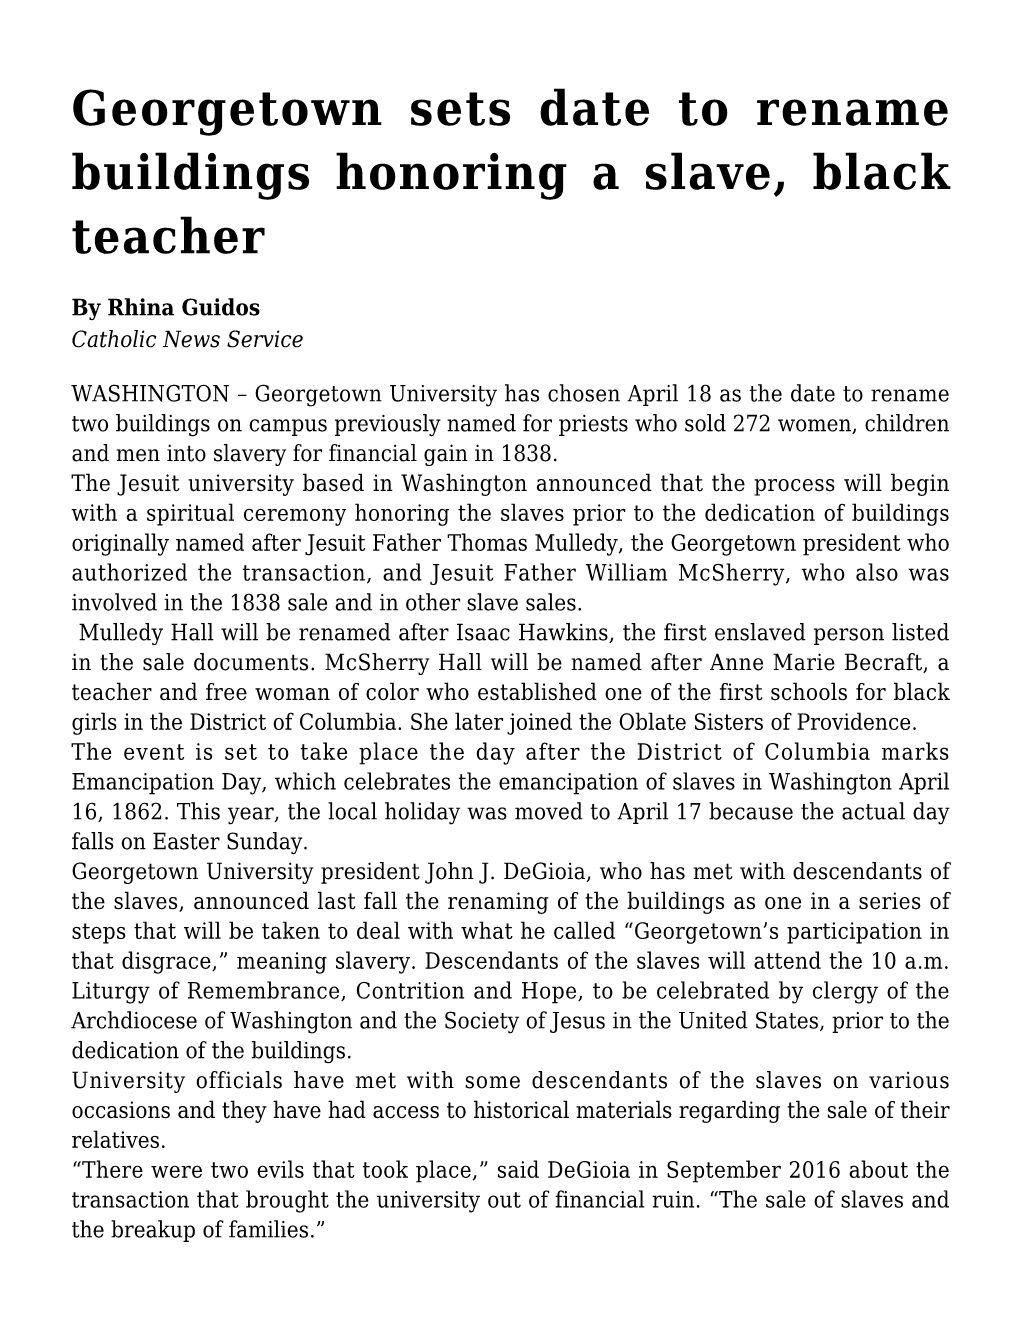 Georgetown Sets Date to Rename Buildings Honoring a Slave, Black Teacher